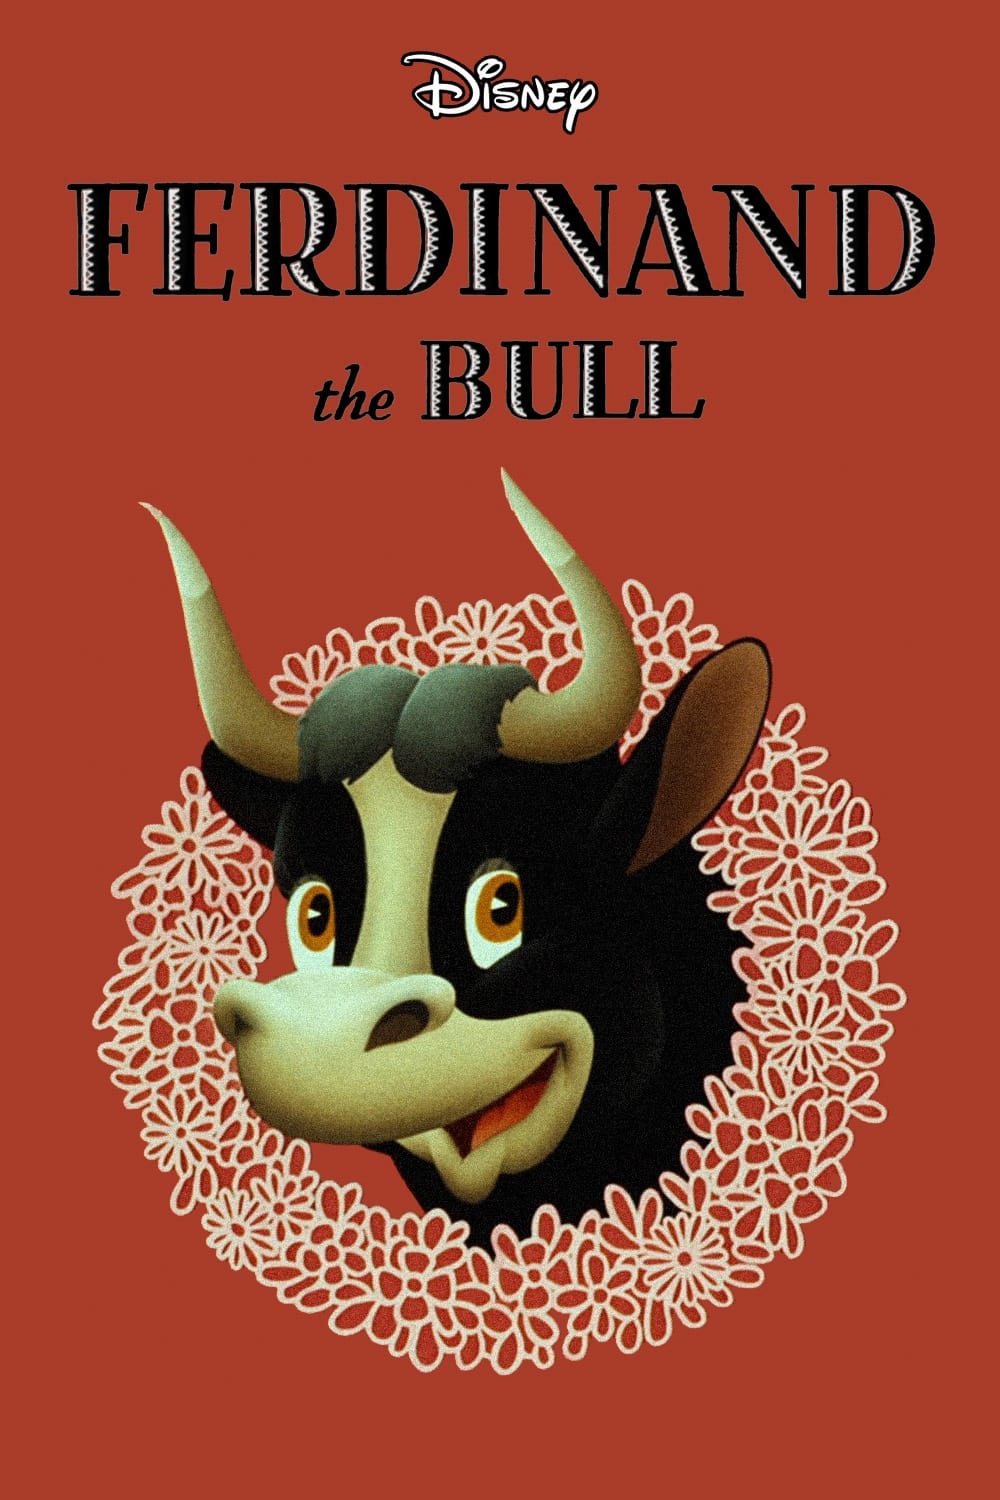 El toro Ferdinando